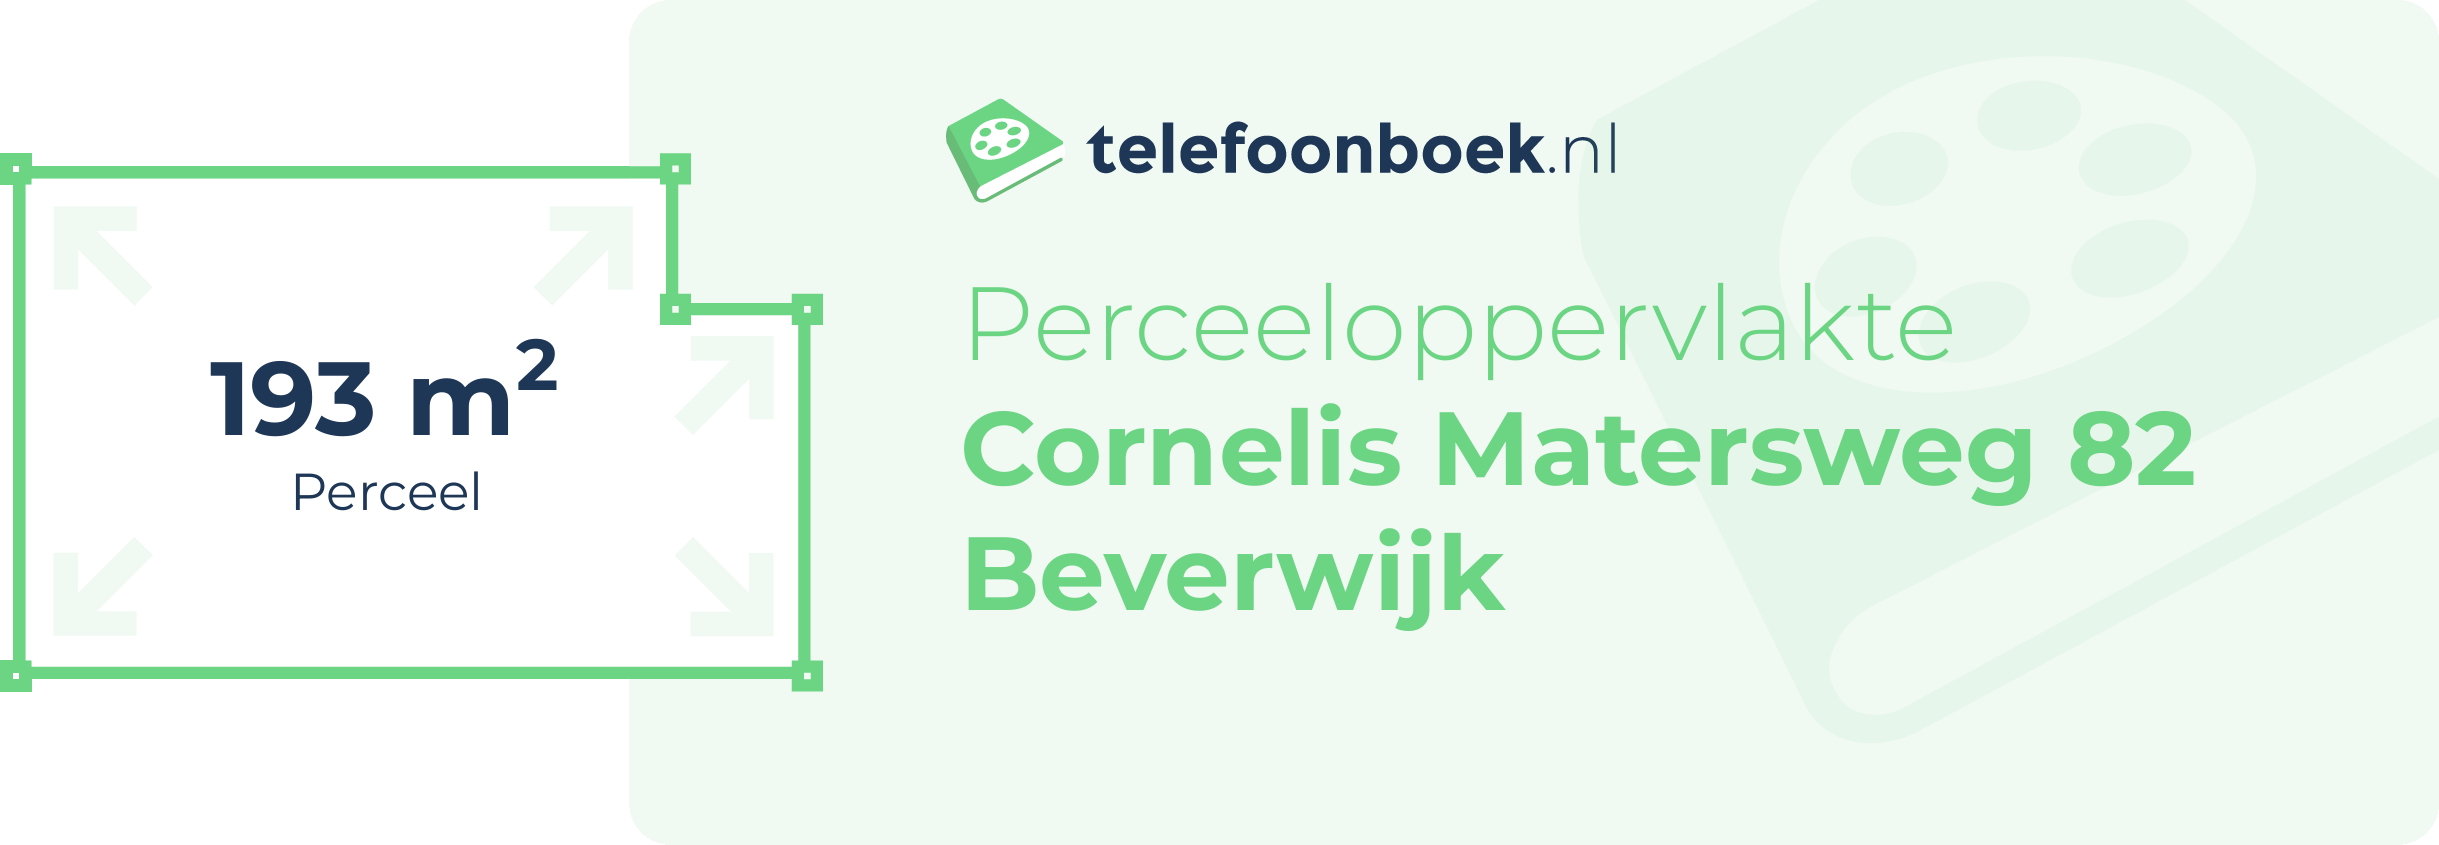 Perceeloppervlakte Cornelis Matersweg 82 Beverwijk